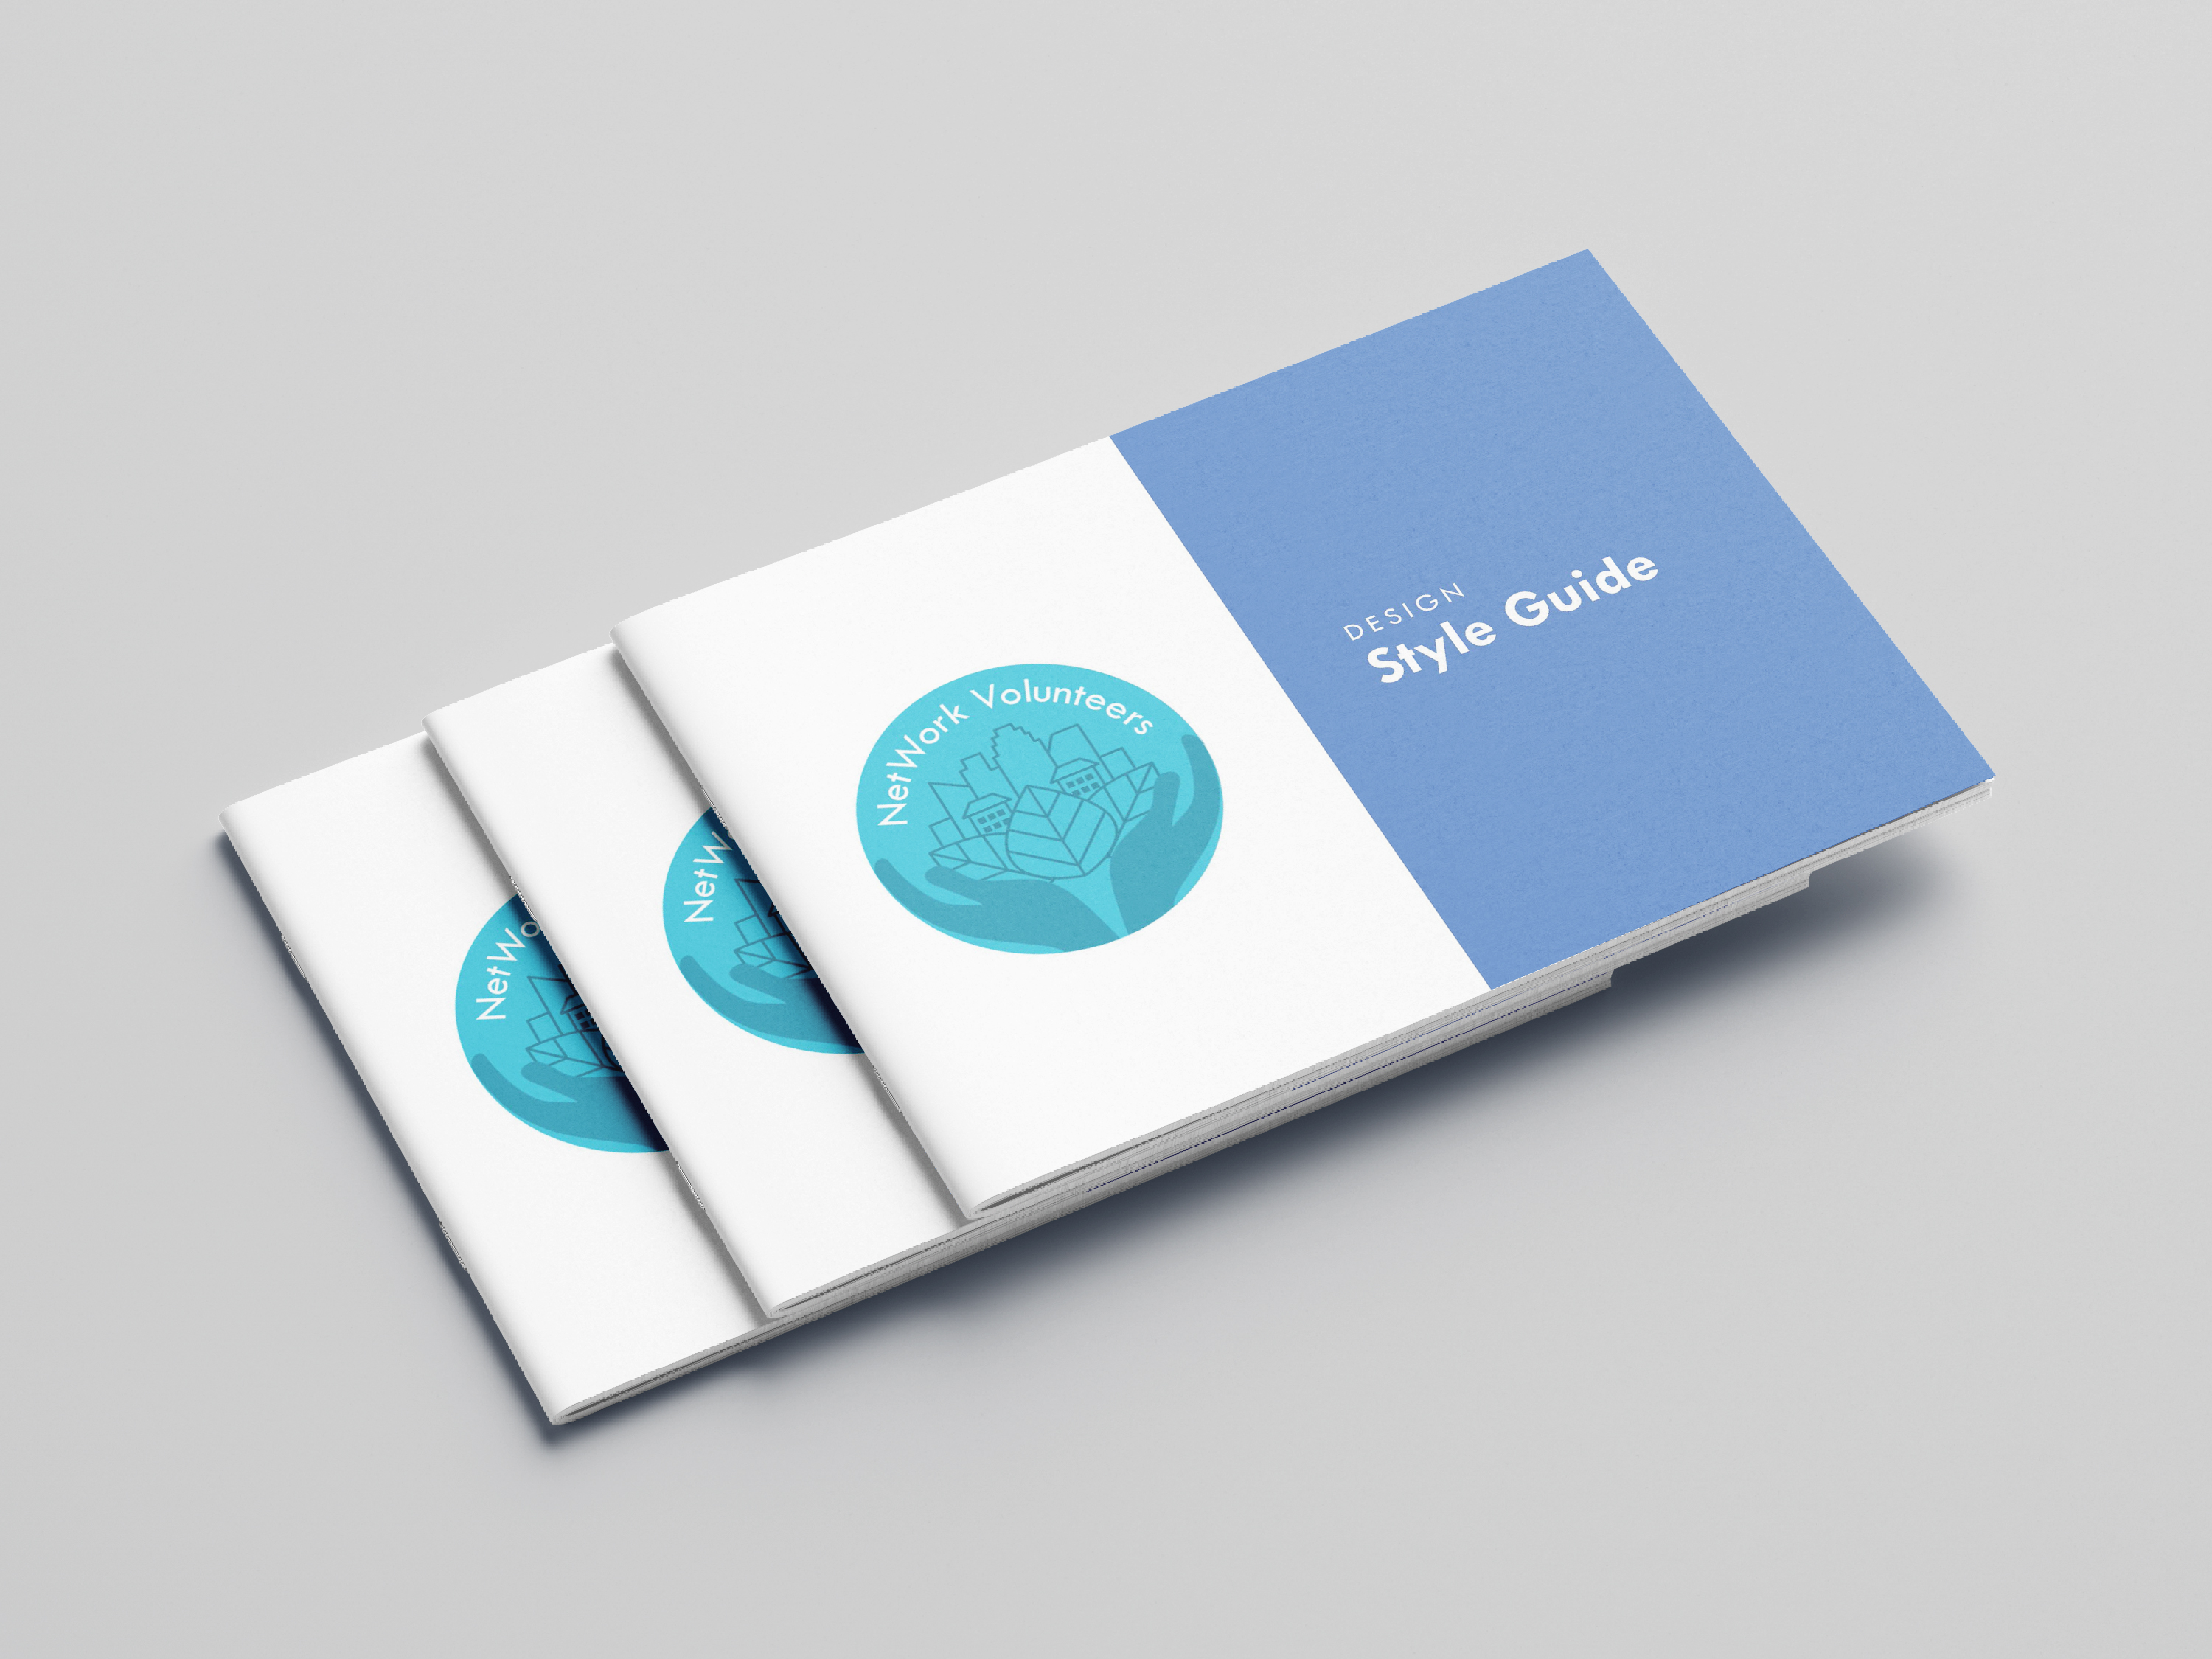 NetWork Volunteers Design Style Guide brochure mockup